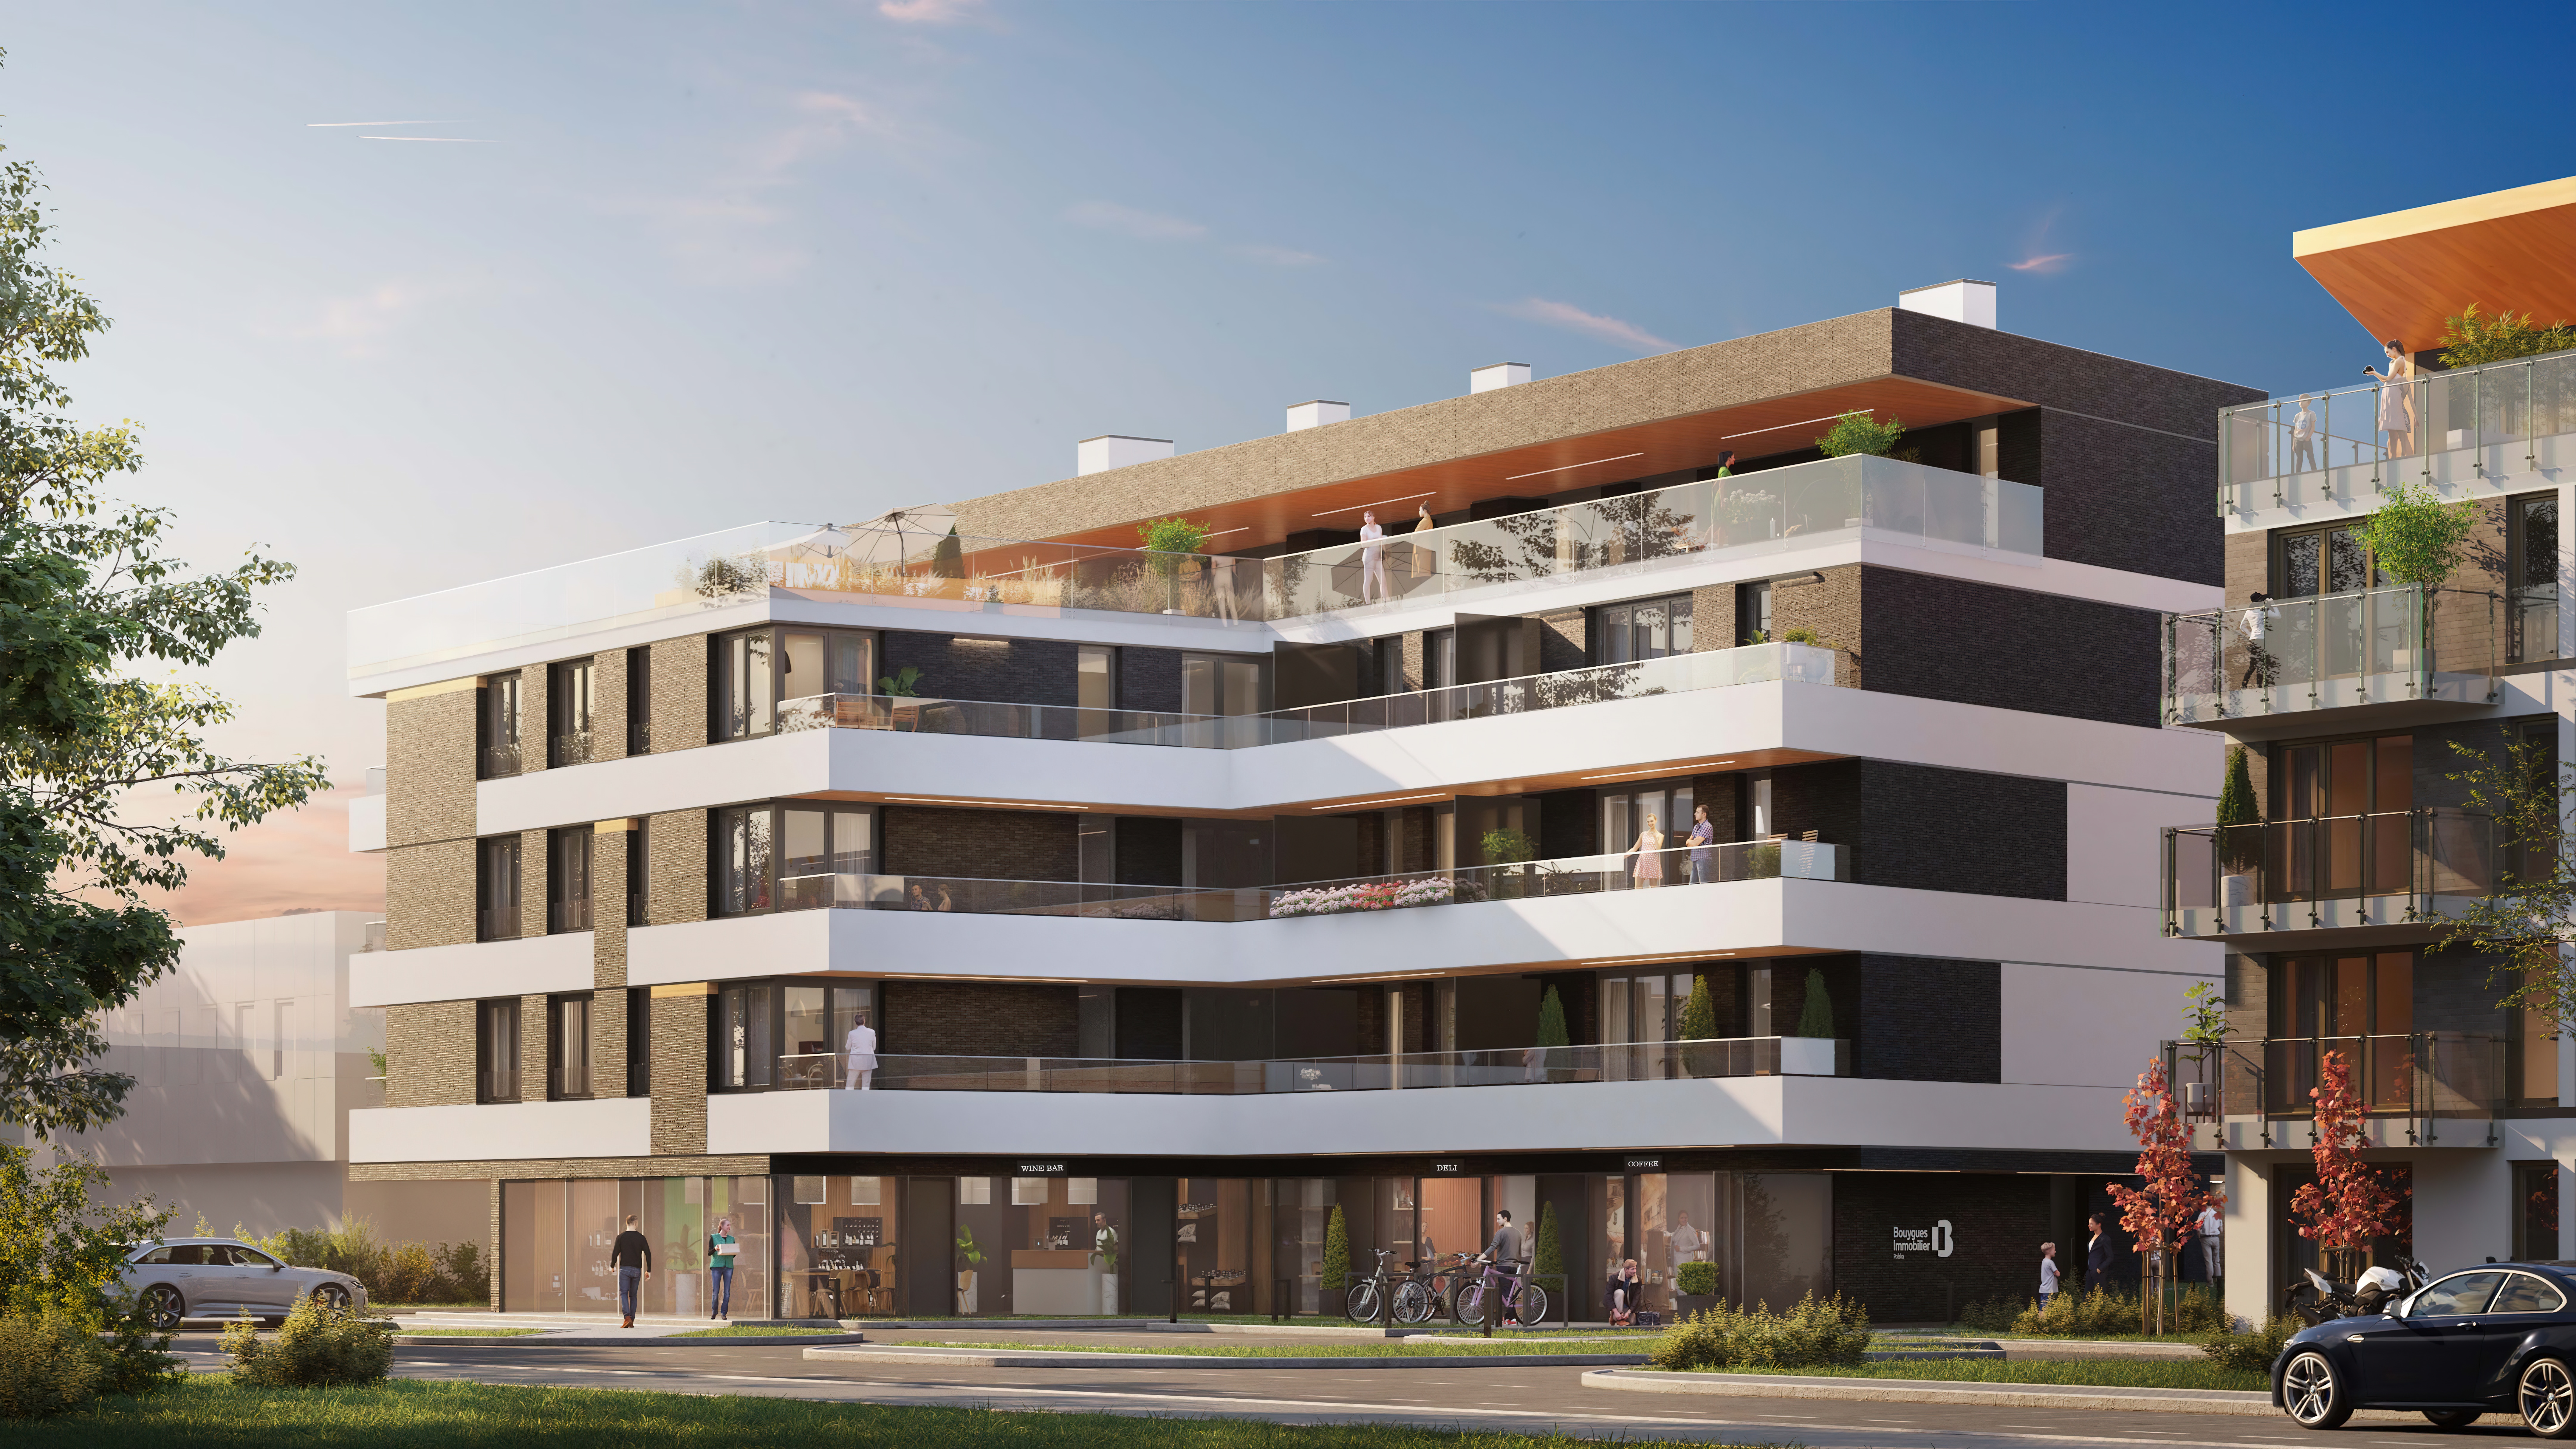 Podpisanie umowy na budowę nowoczesnego apartamentowca LINDE RESIDENCE II - PL